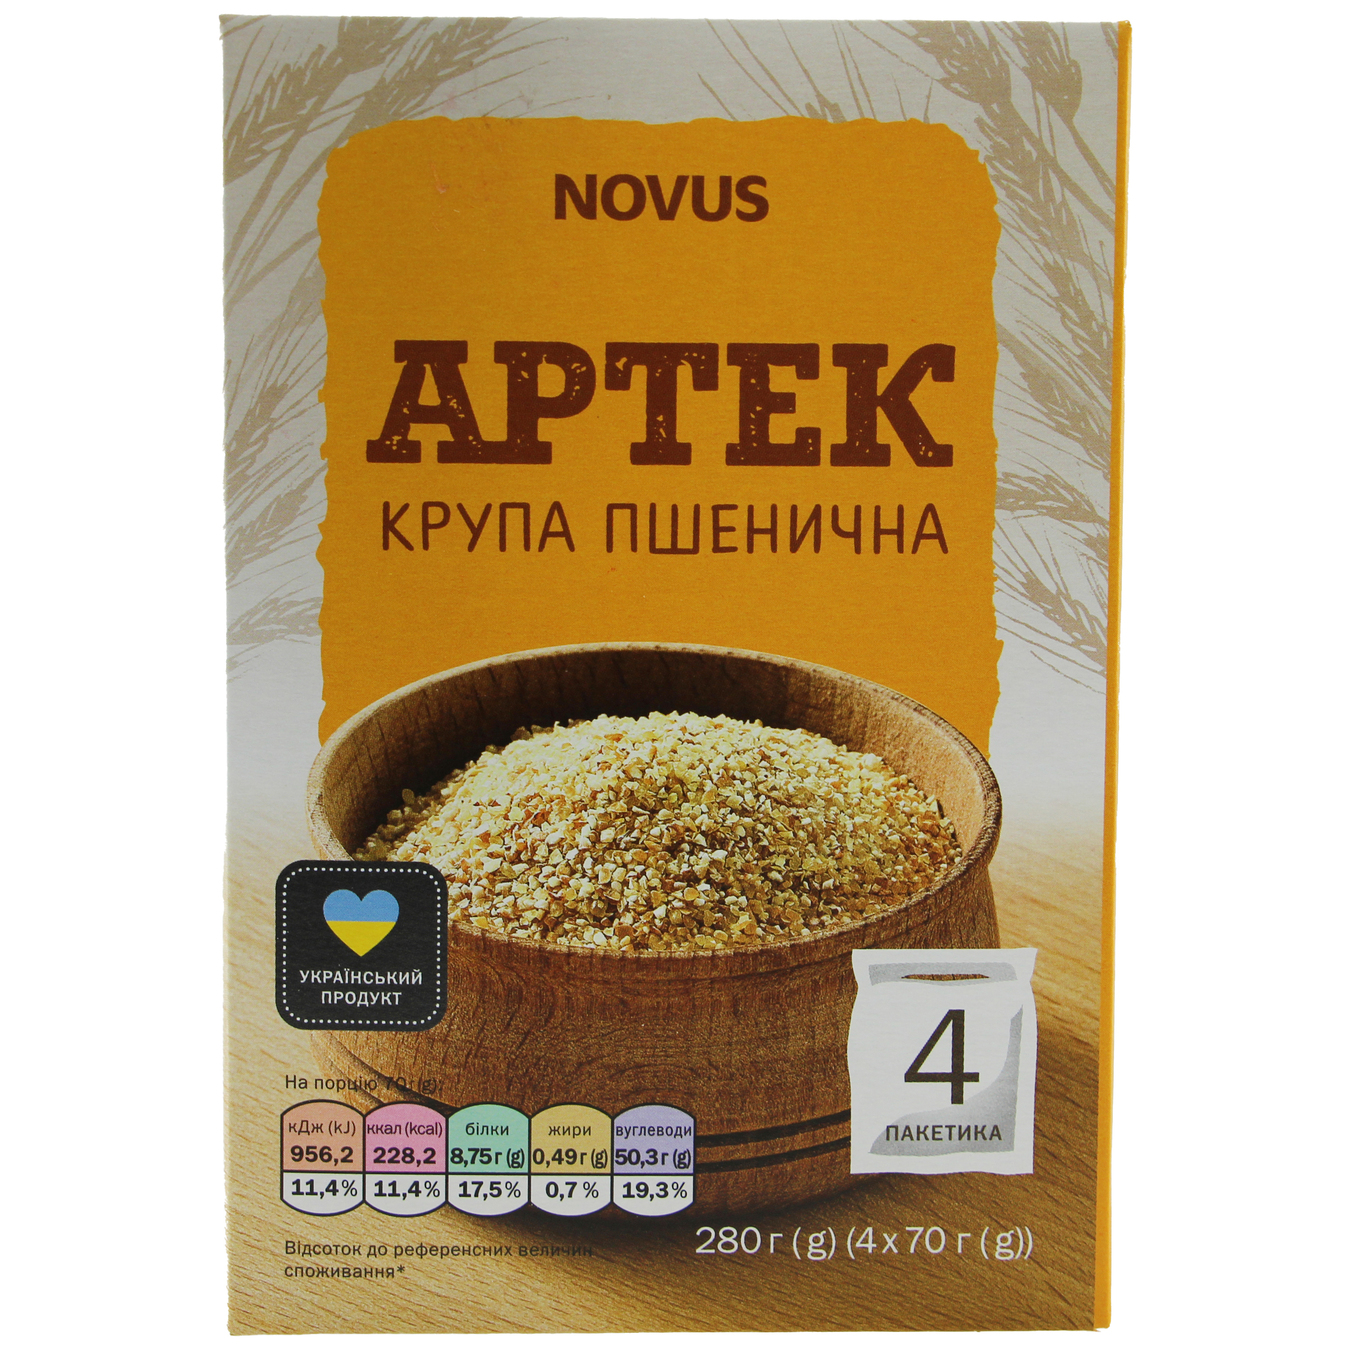 Novus Artek Wheat Groats in Bags 4x70g